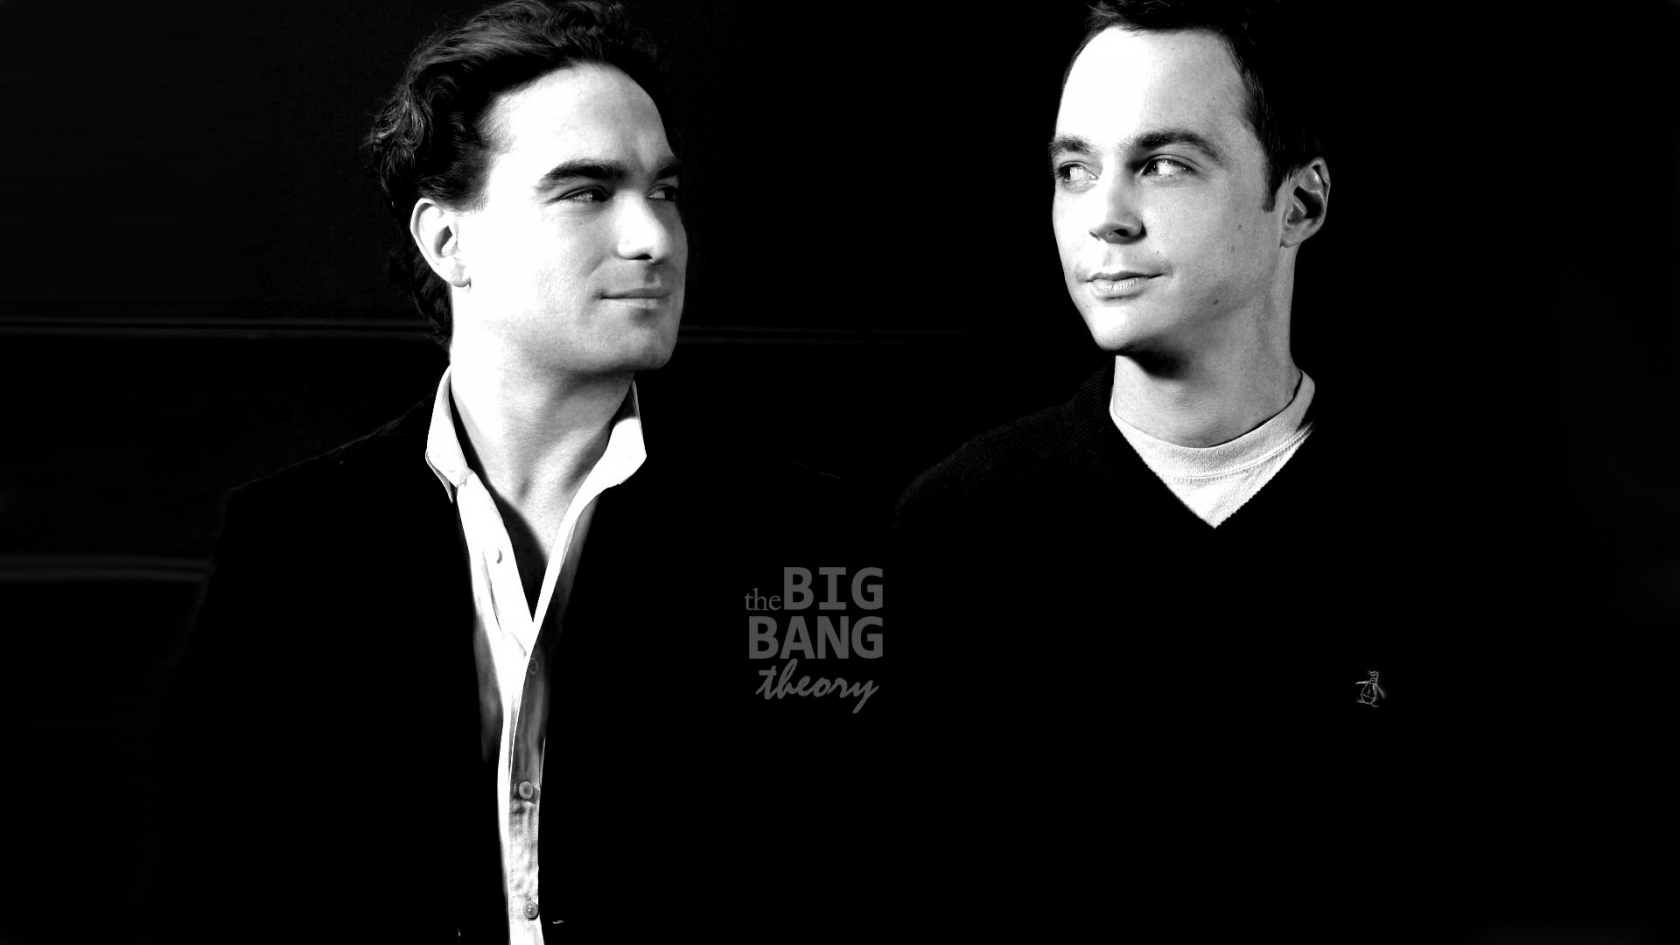 The Big Bang Theory Leonard and Sheldon for 1680 x 945 HDTV resolution